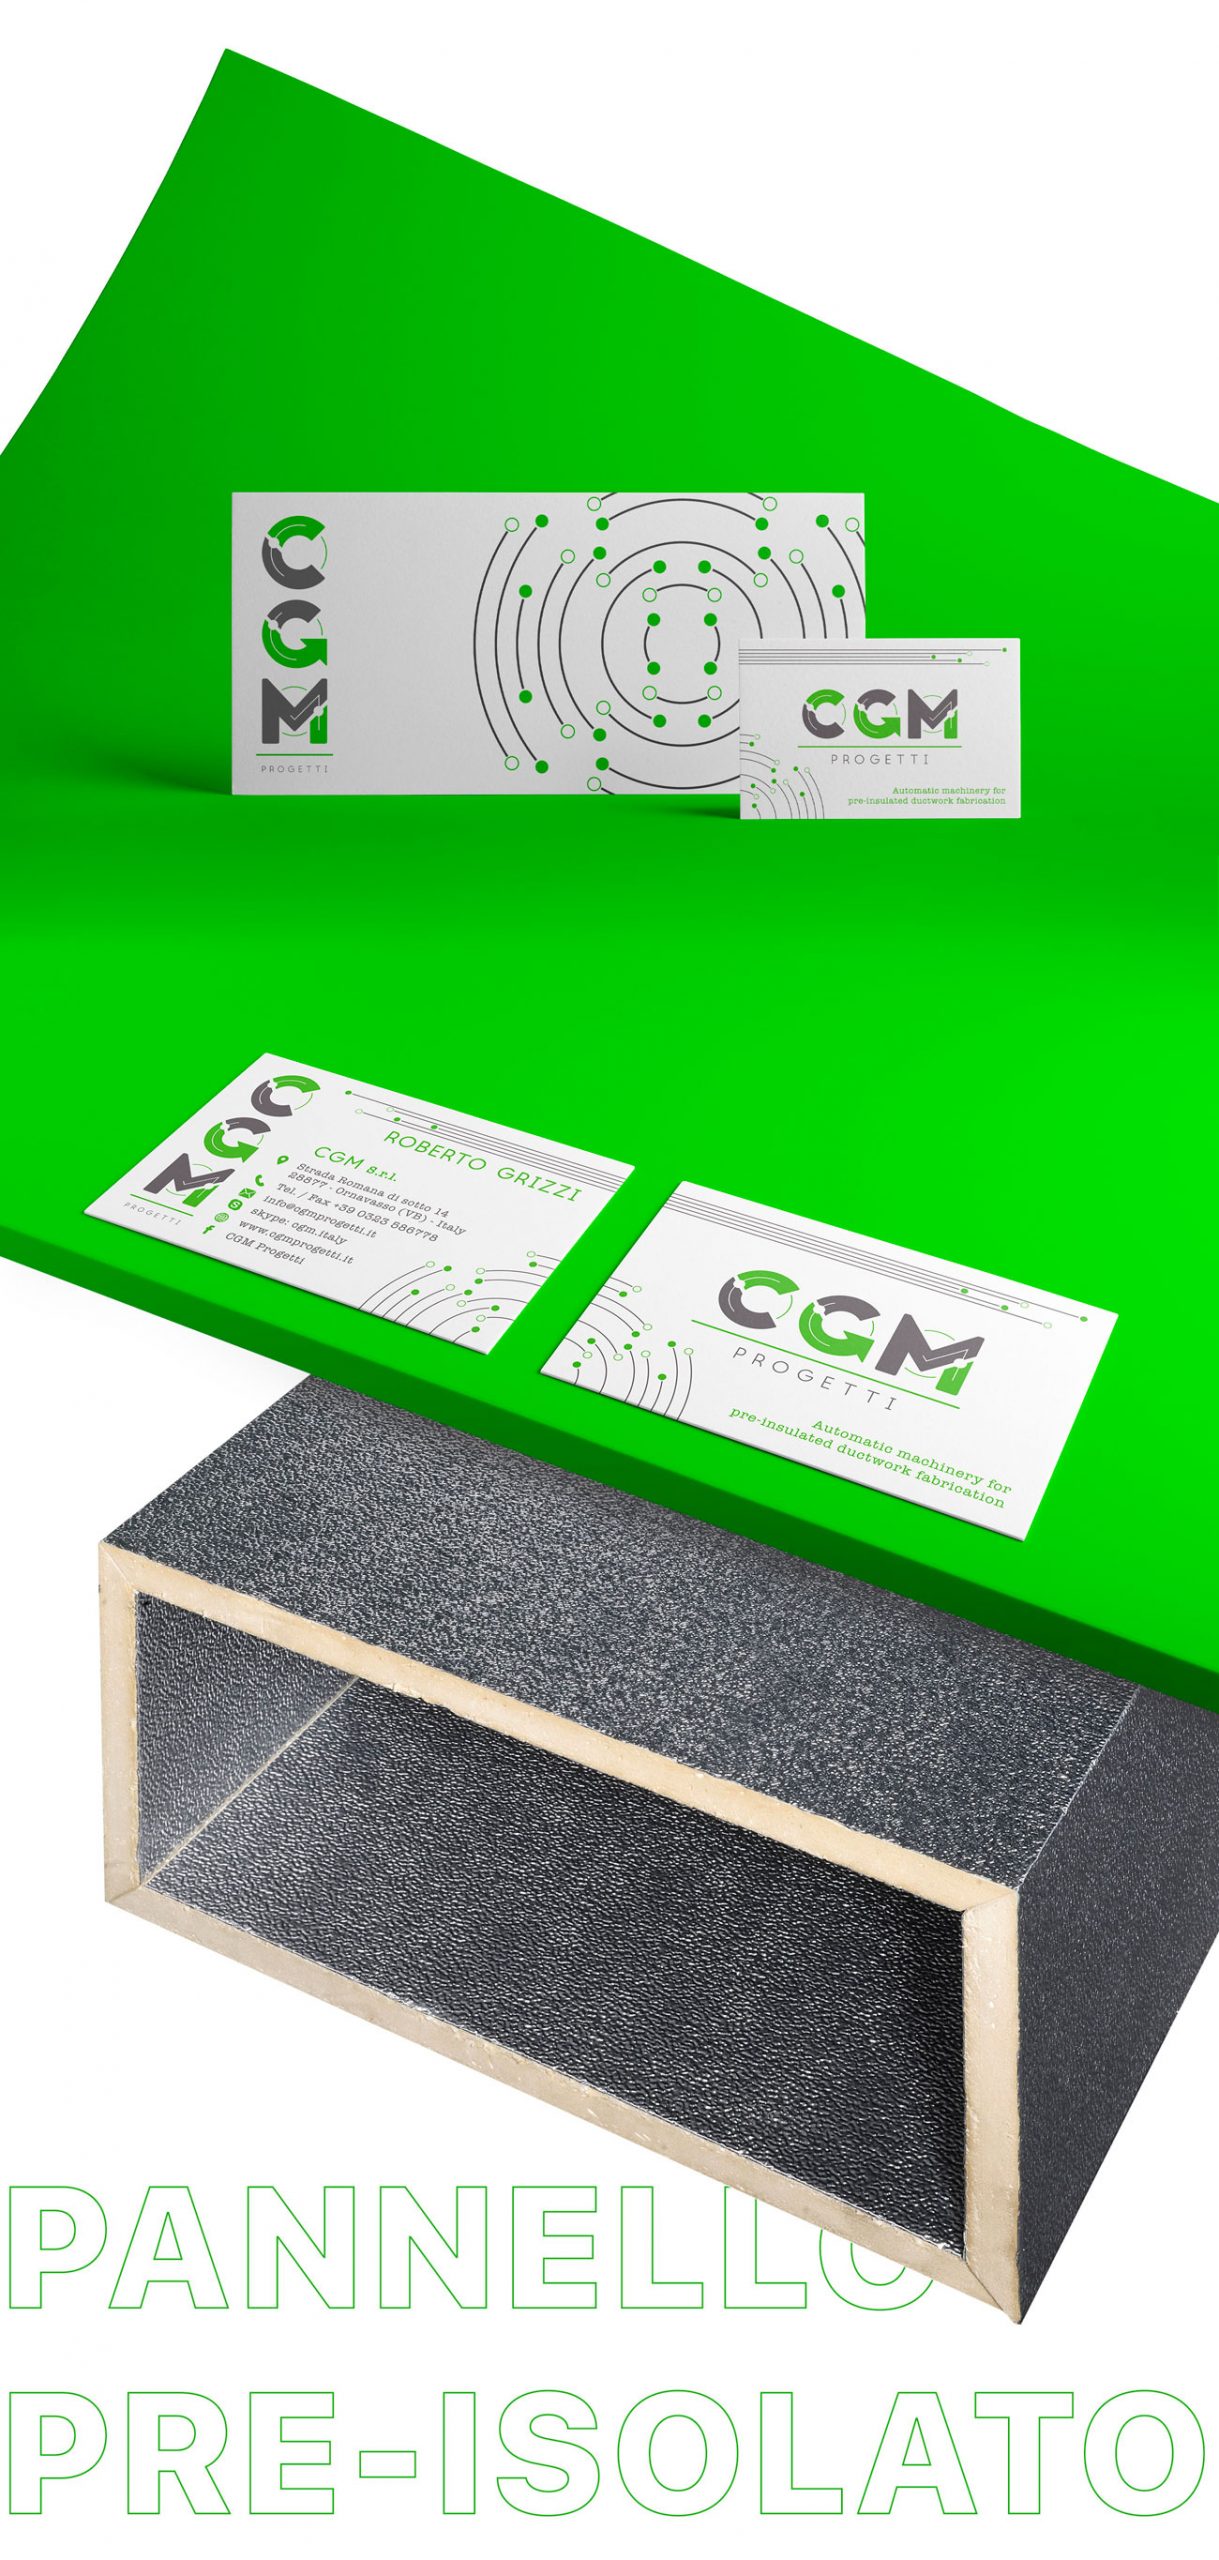 Logo e brand identity di CGM Progetti realizzato da SEBA! grafico di Gravellona Toce nel VCO di biglietti da visita e carta intestata